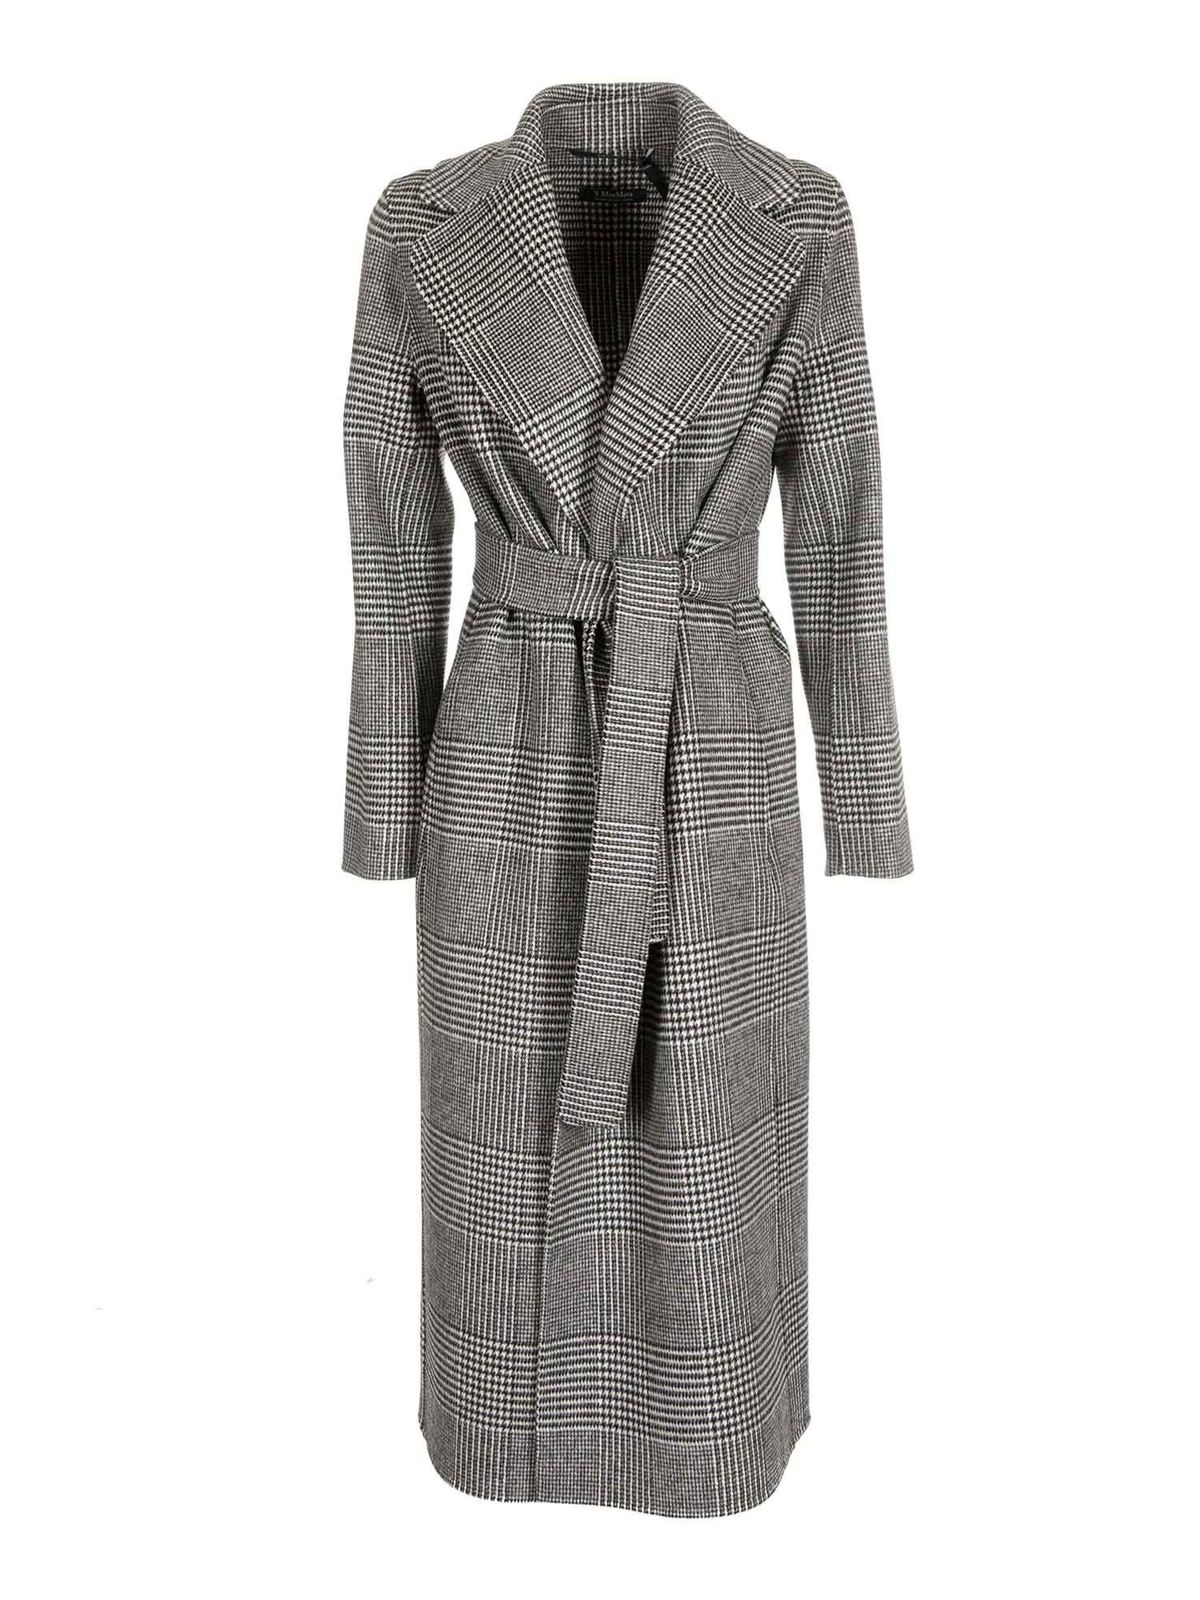 S Max Mara - Fiorito coat in black and white - long coats - 90161503000001